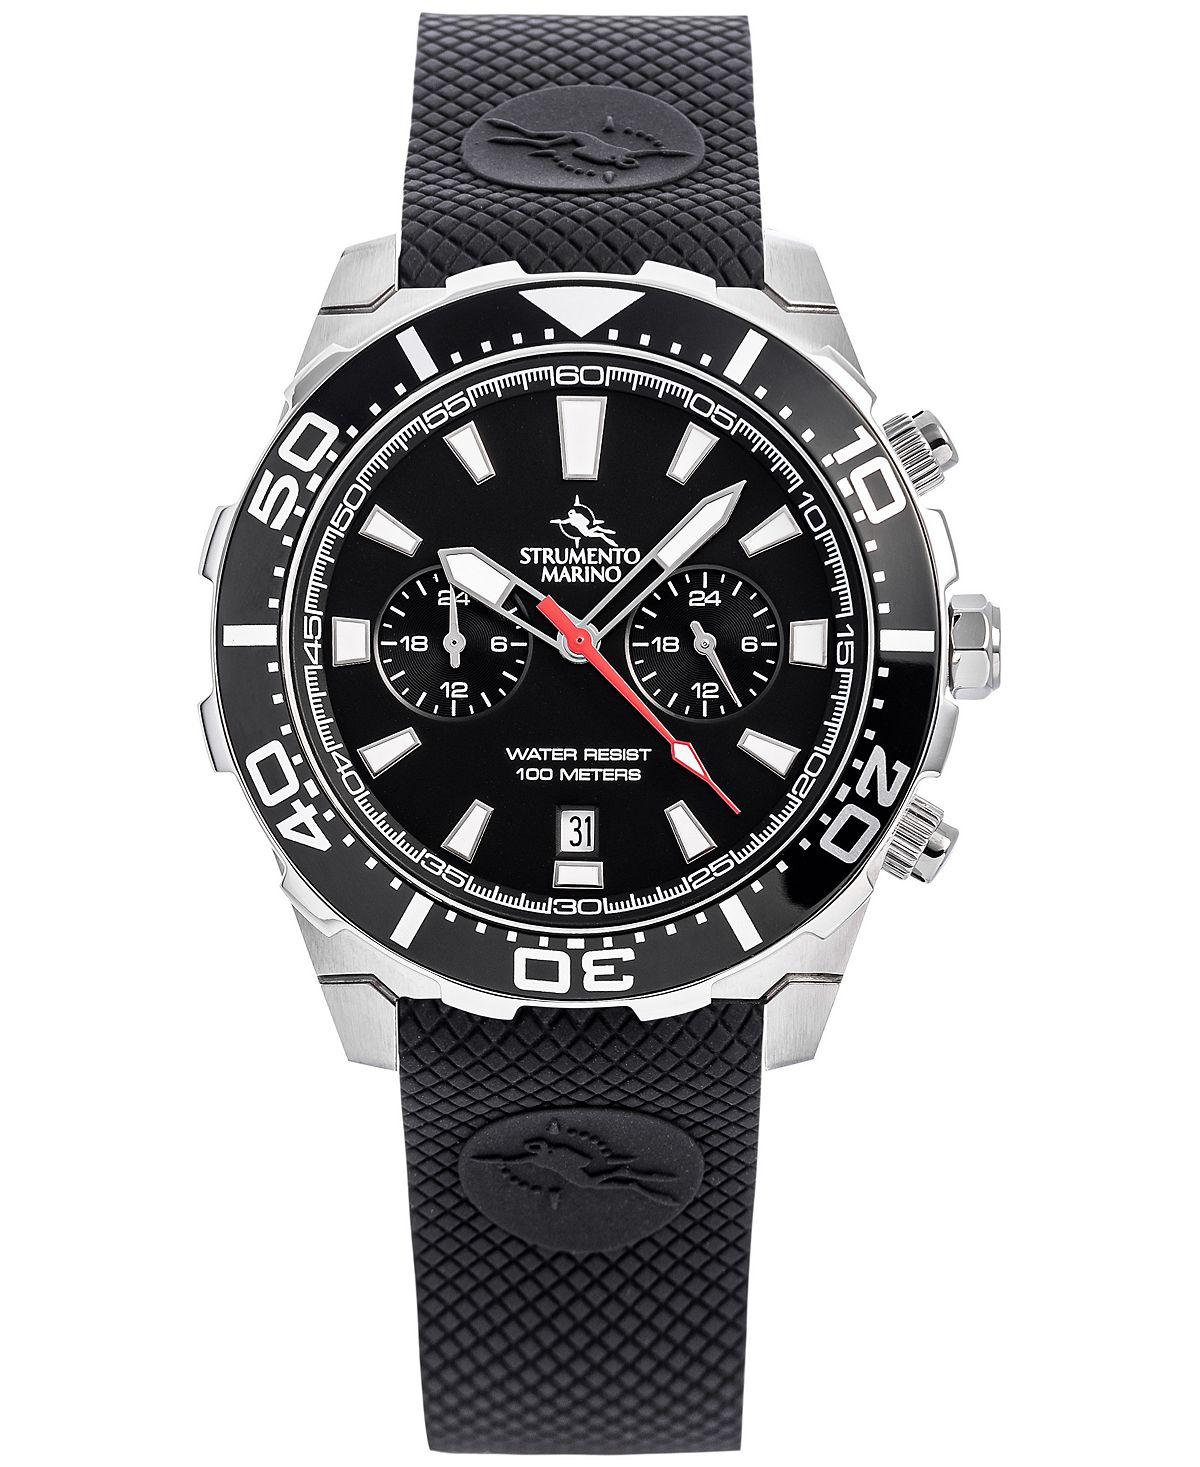 Мужские часы Skipper с двумя часовыми поясами, черный силиконовый ремешок, 44 мм Strumento Marino мужские часы skipper с двумя часовыми поясами черный силиконовый ремешок 44 мм strumento marino